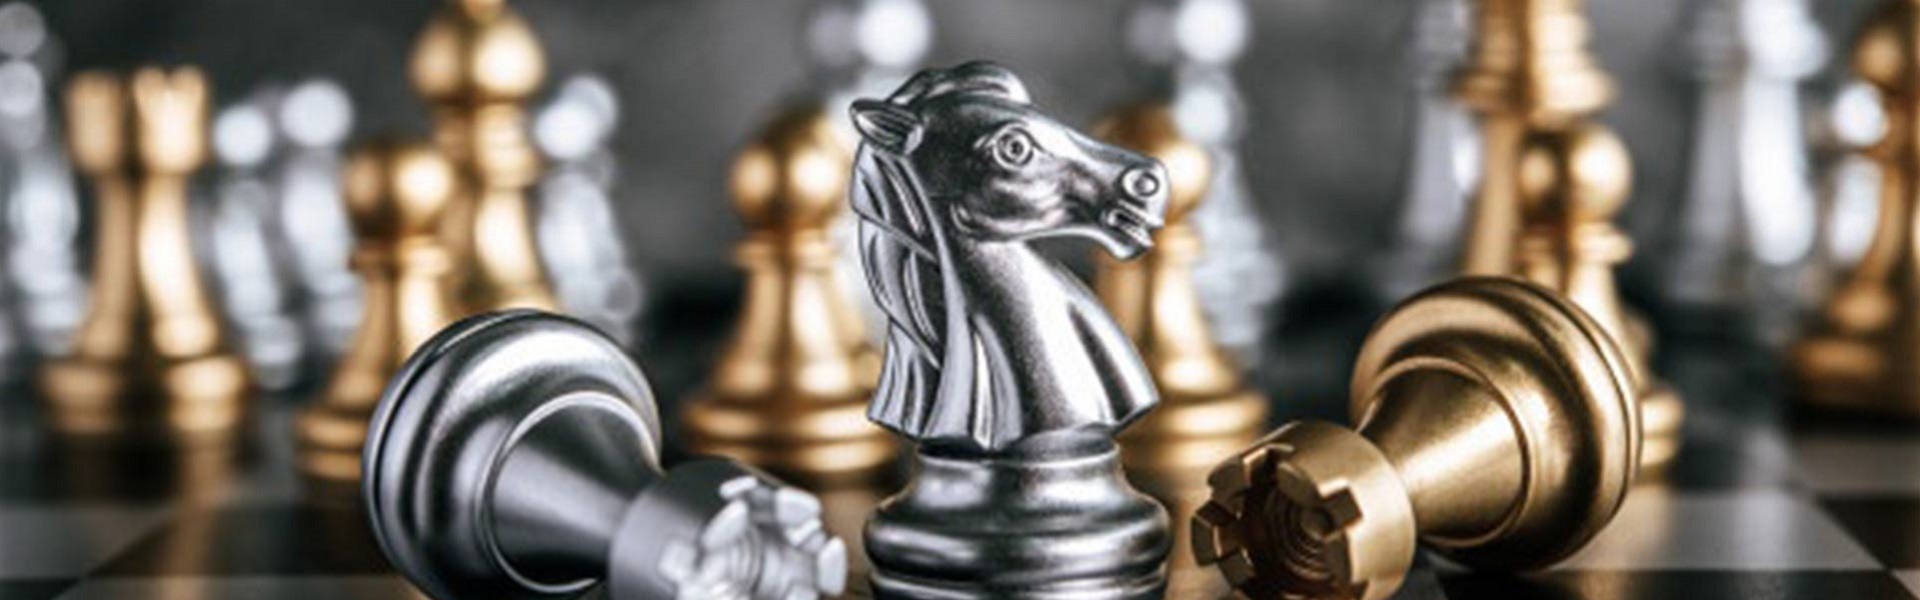 Laminat parket online shop |  Chess lessons Dubai & New York